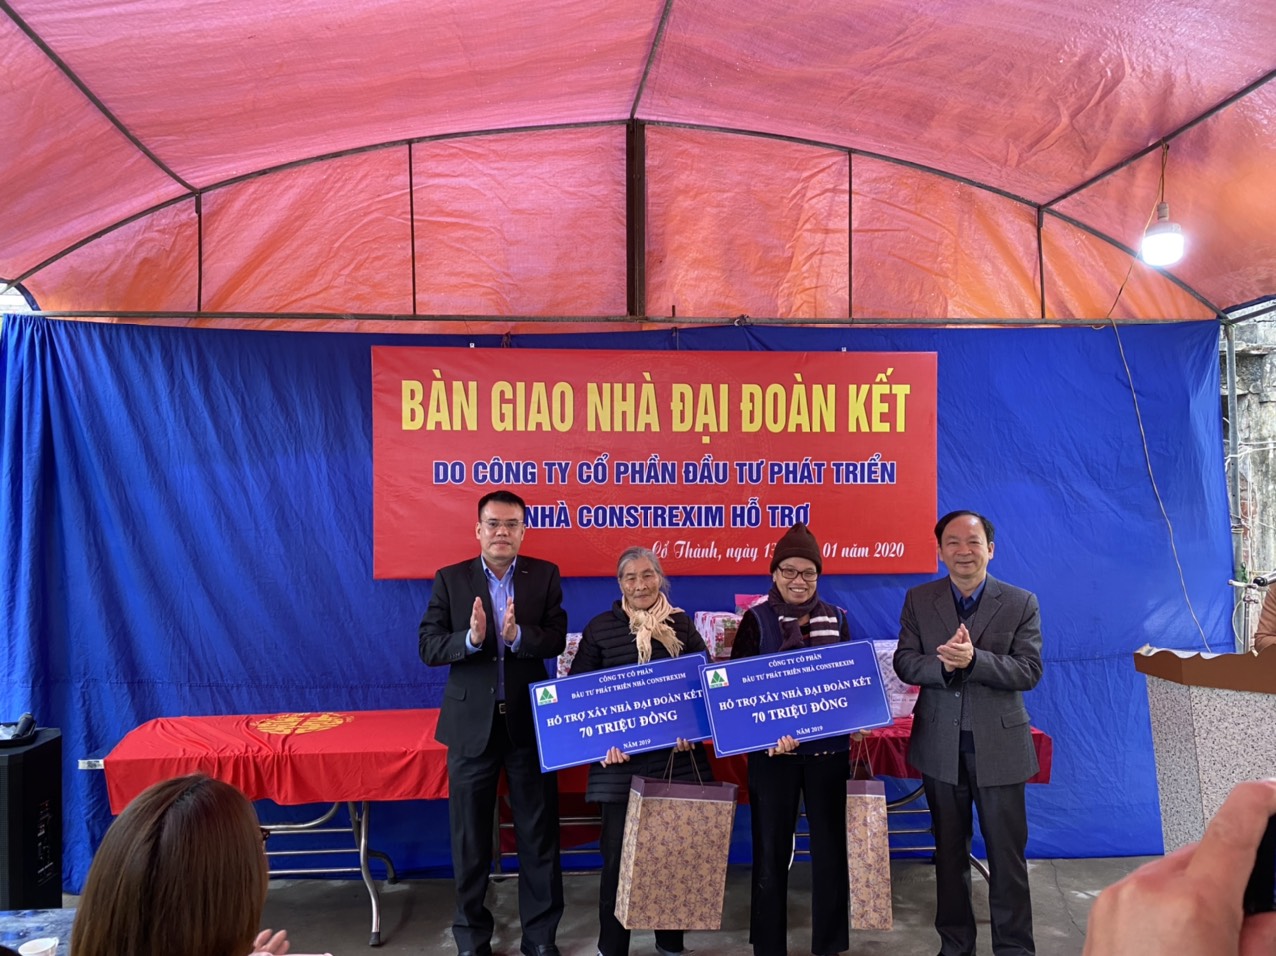 Trao tặng nhà đại đoàn kết cho các gia đình có hoàn cảnh khó khăn tại thành phố Chí Linh, tỉnh Hải Dương năm 2020